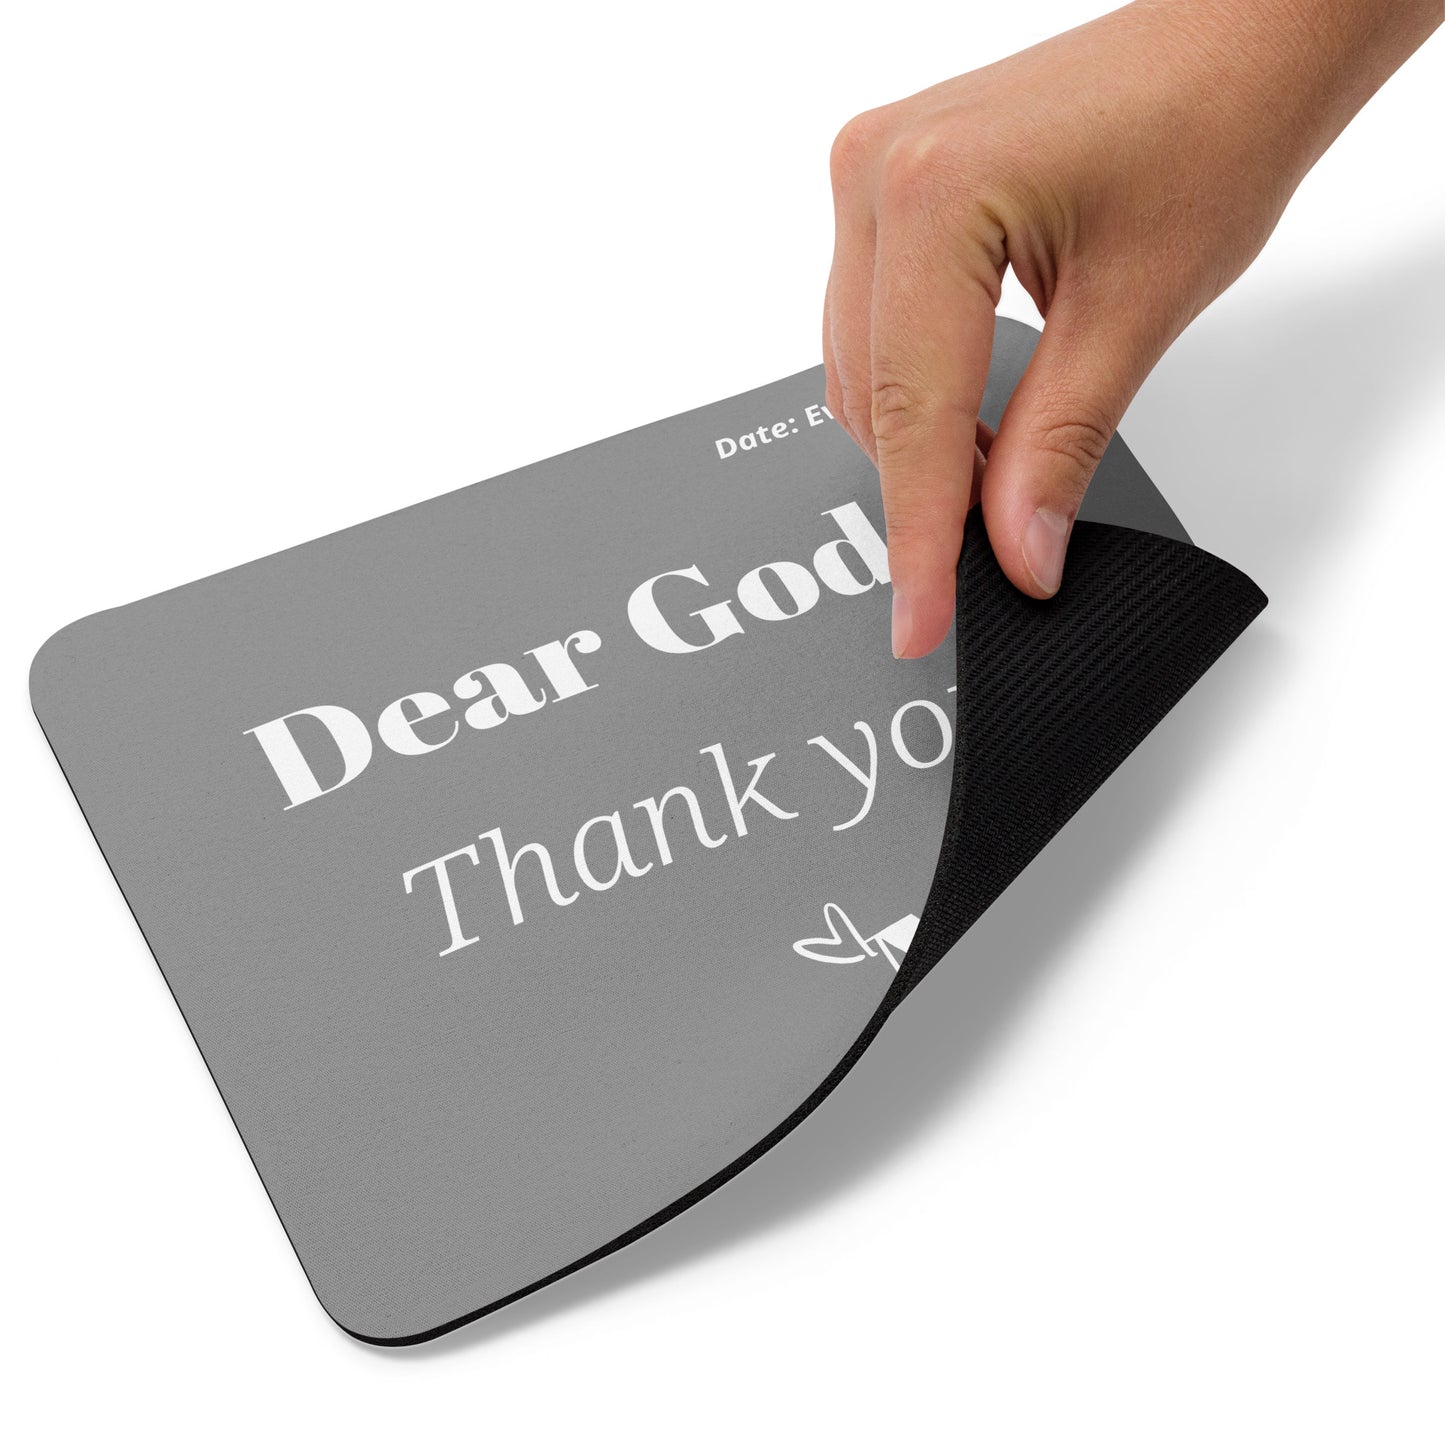 Dear God Mouse pad